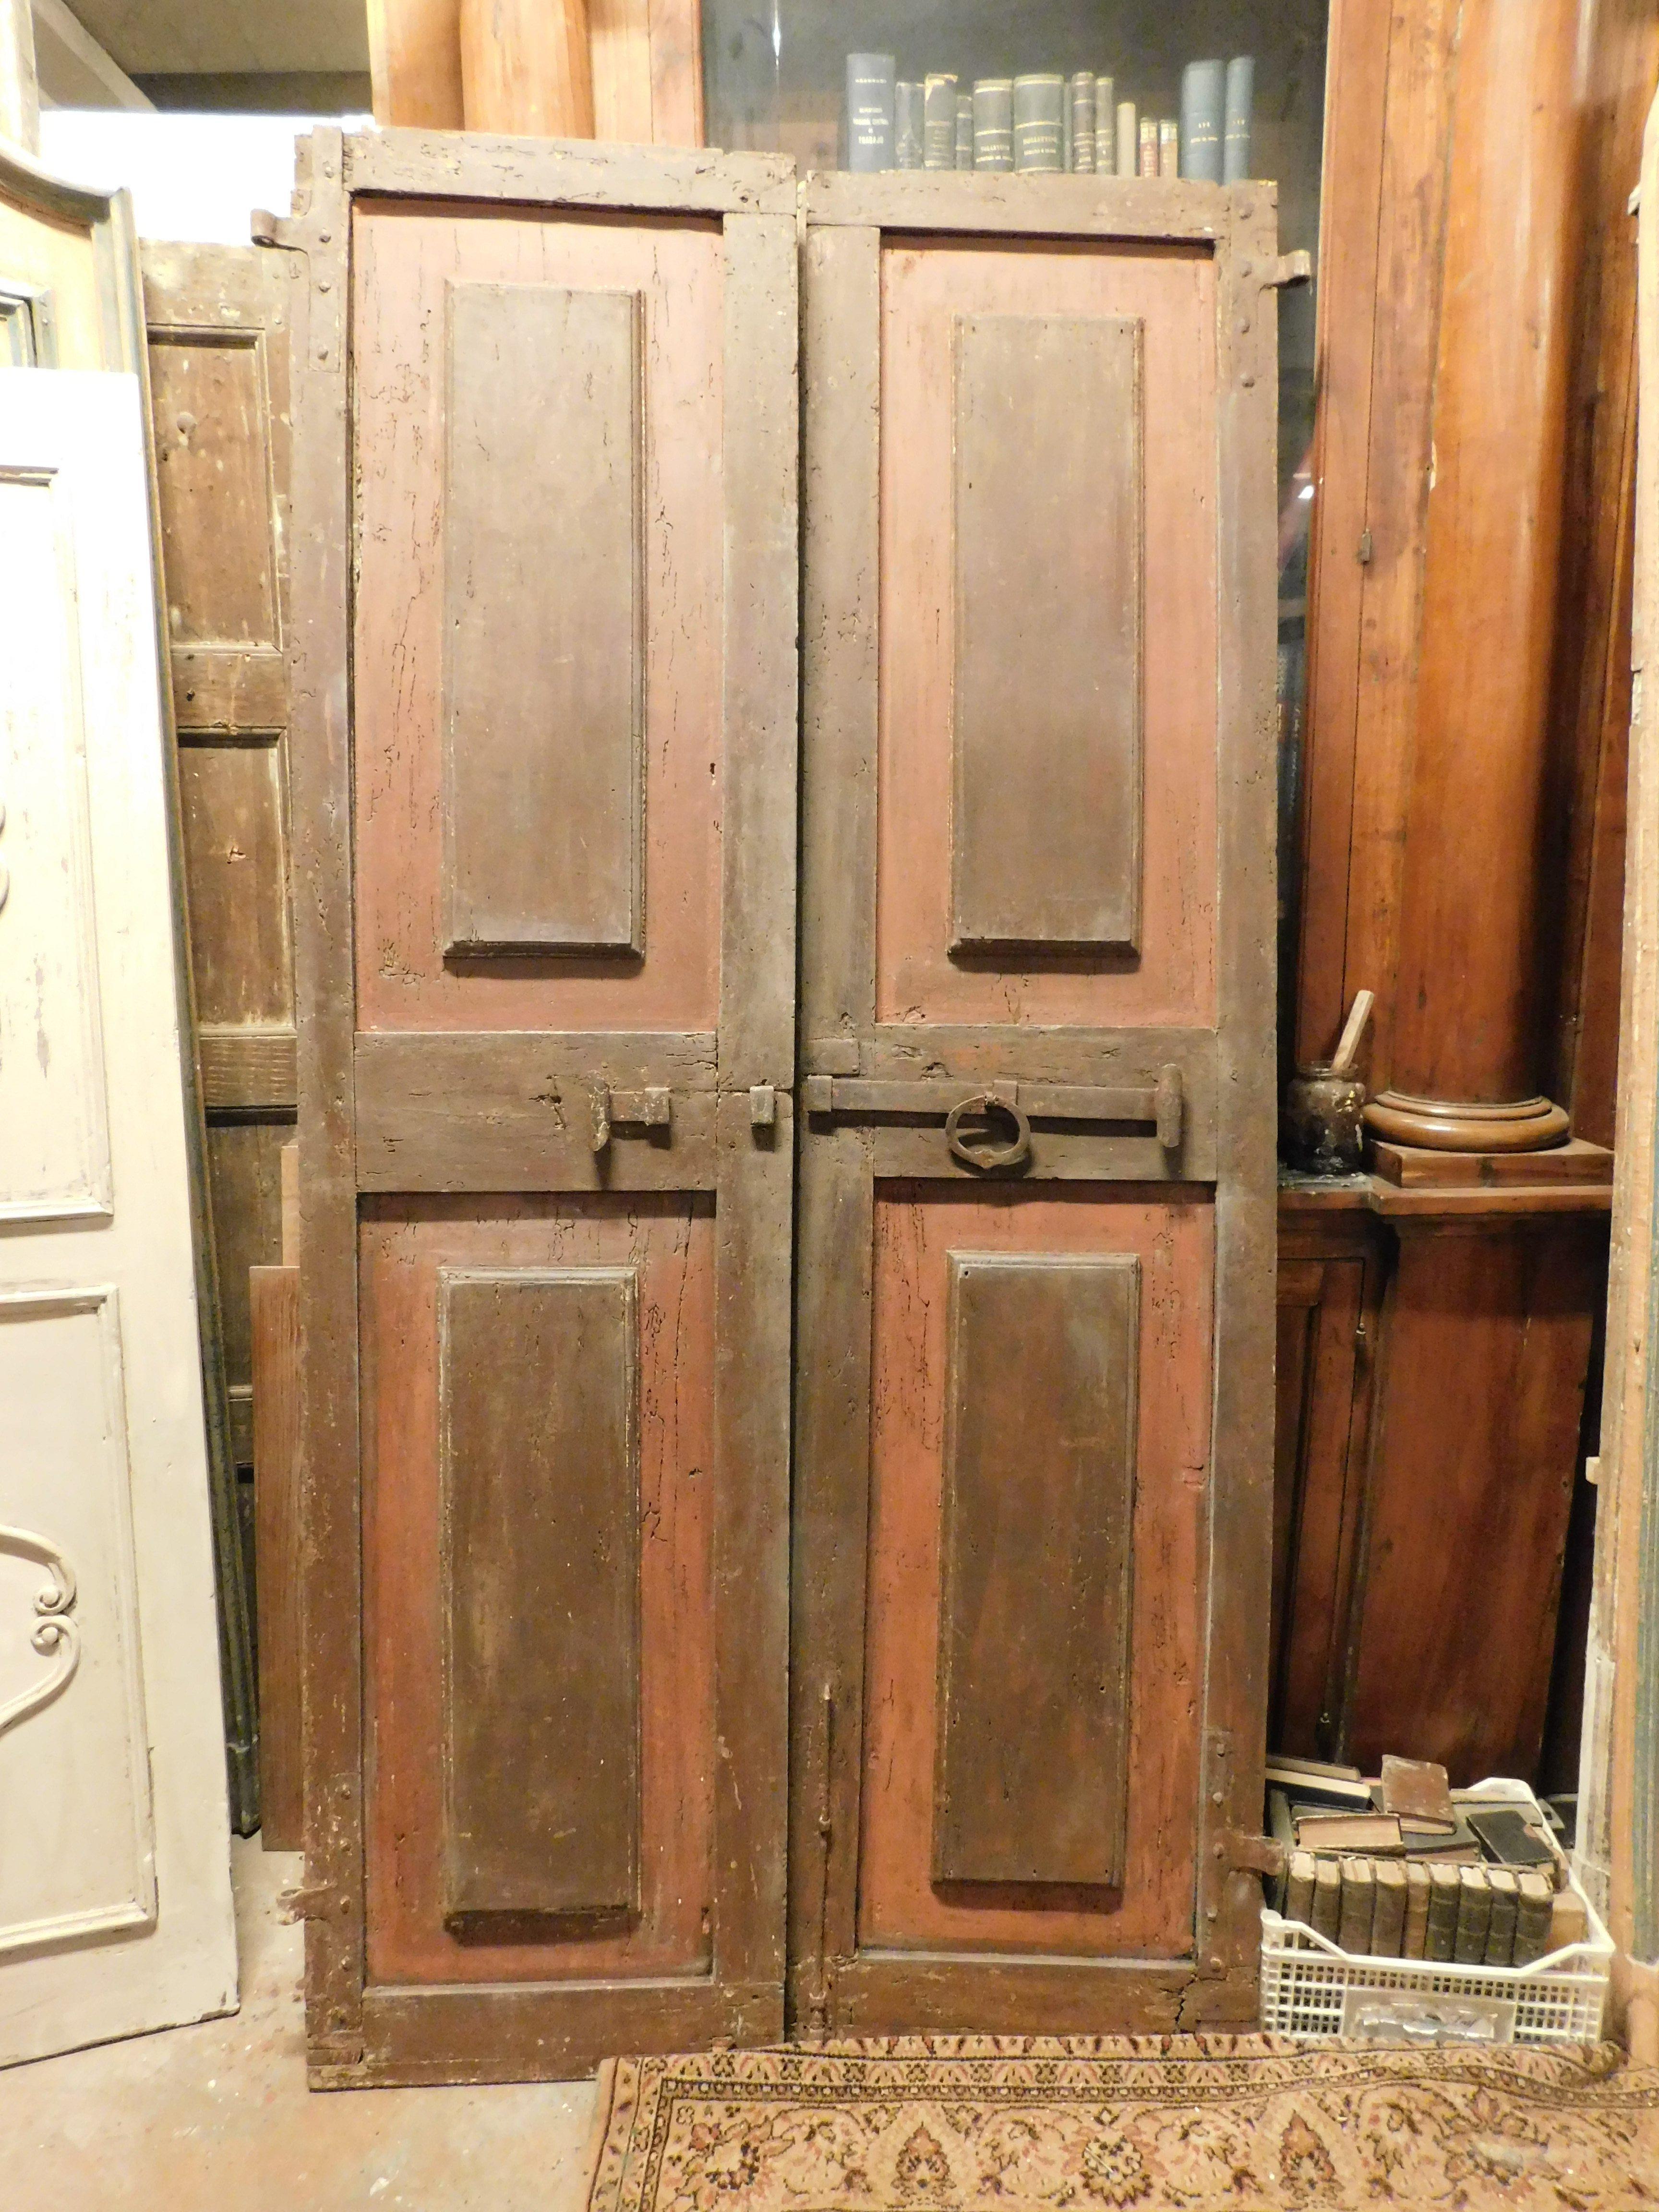 Ancienne porte à double battant, à usage intérieur et laquée rouge avec pêne en fer d'origine, panneaux sculptés et arrière également laqué, provenant du sud de l'Italie du XVIIIe siècle, mesure L 112 x H 220 x P 4 cm.
Idéale comme porte (également